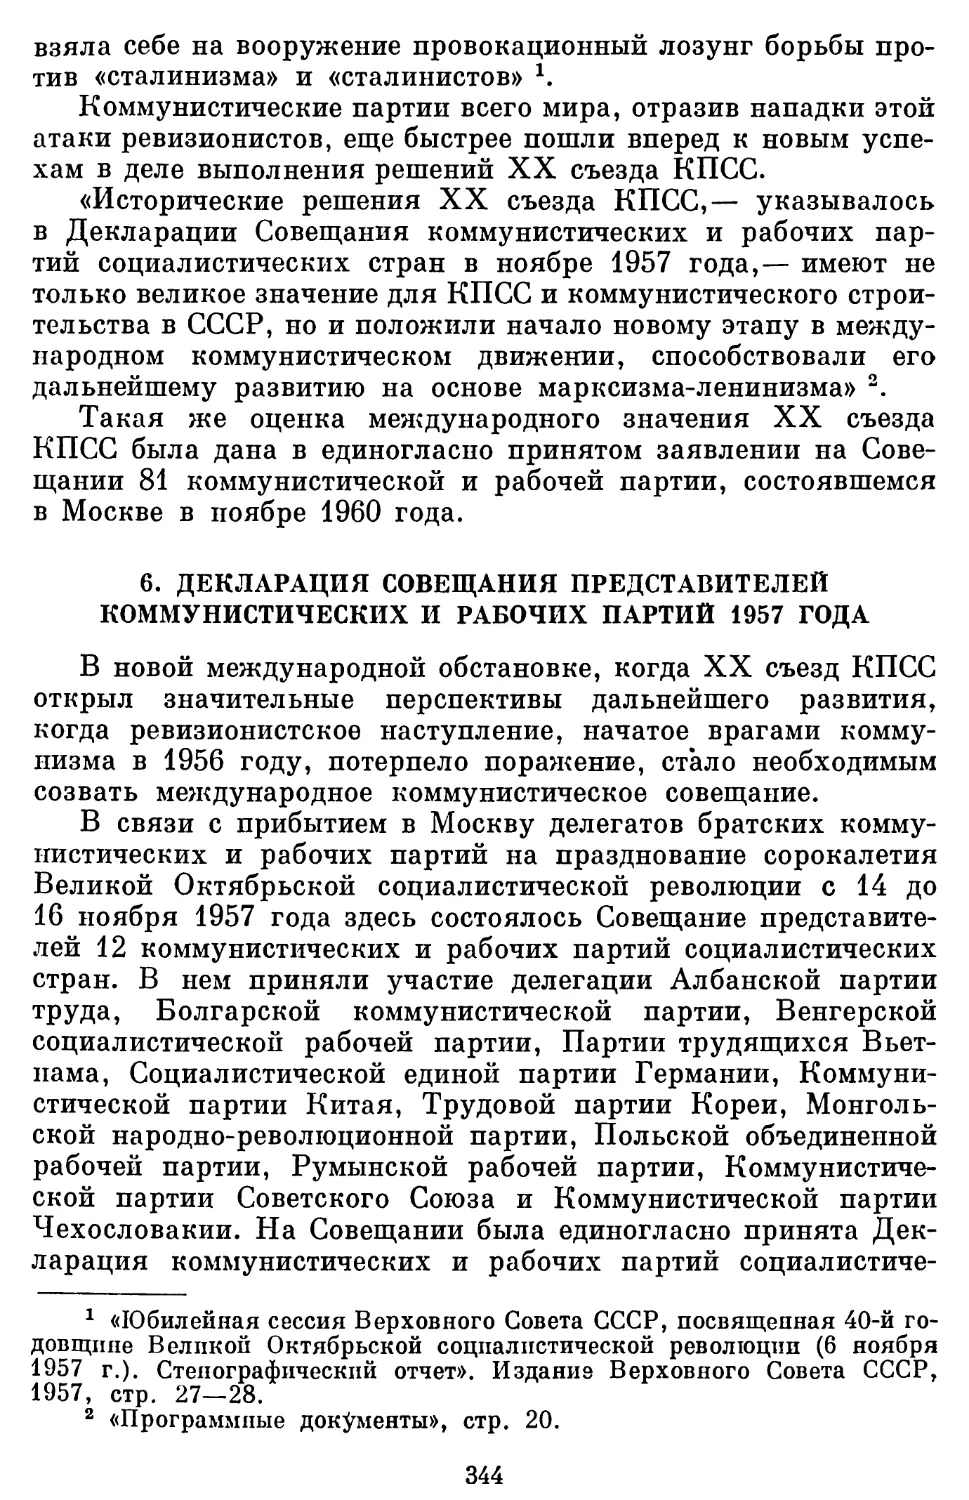 6. Декларация Совещания представителей коммунистических и рабочих партий 1957 года